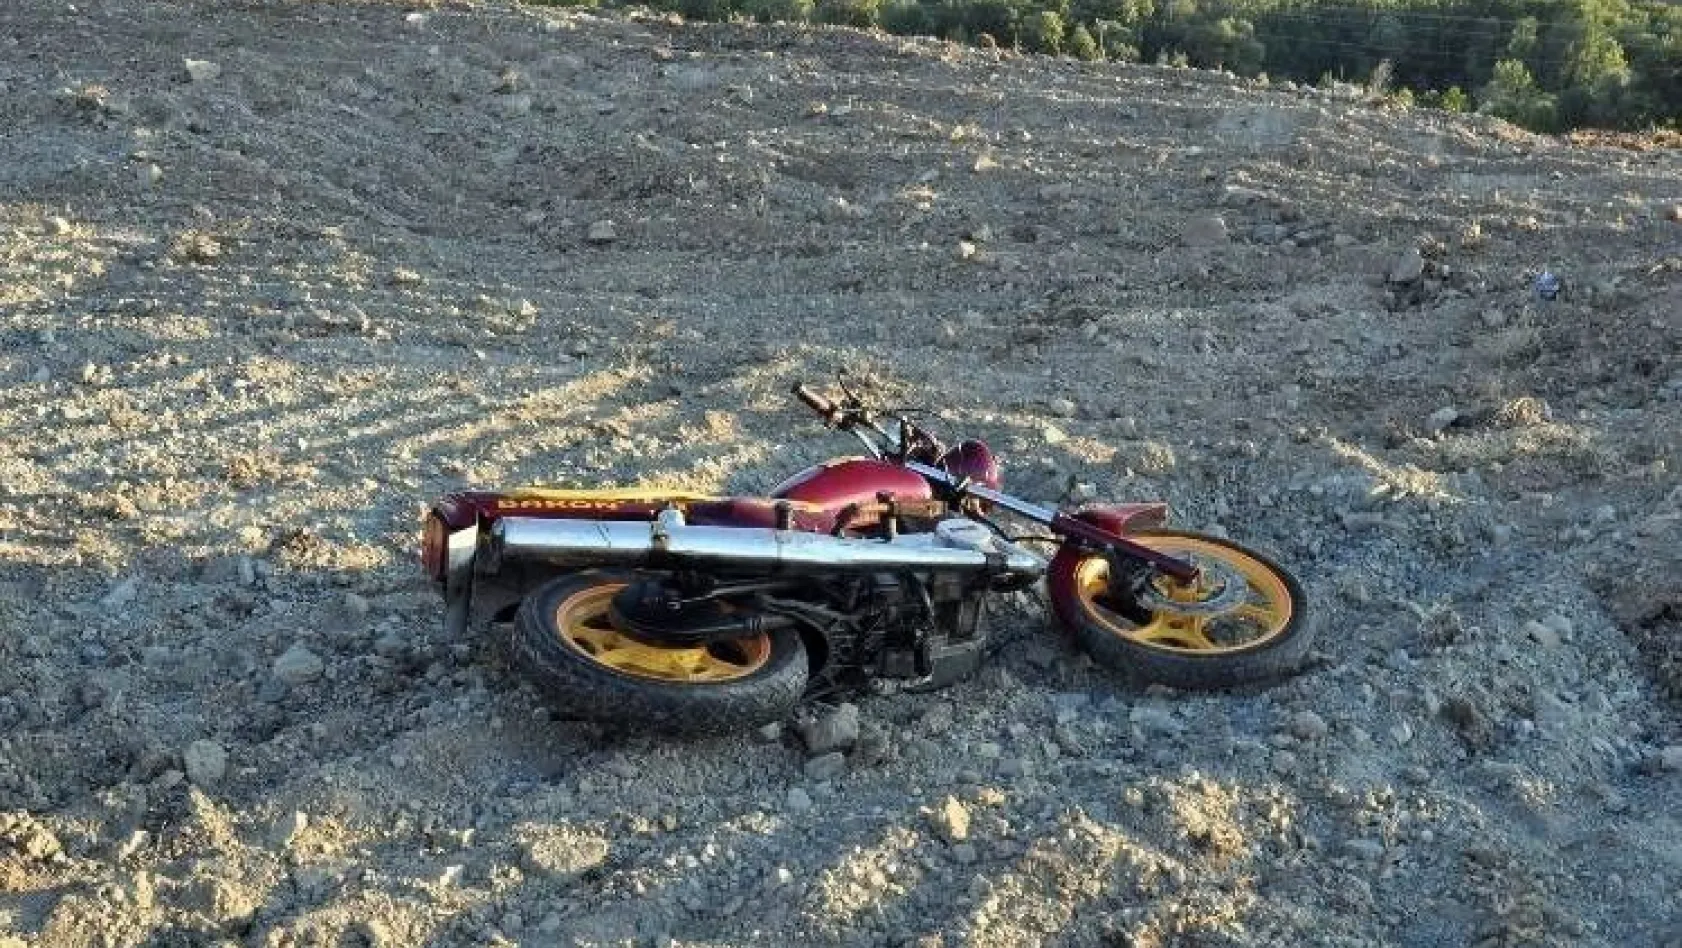 Elazığ'daki motosiklet kazasında 1 kişi öldü